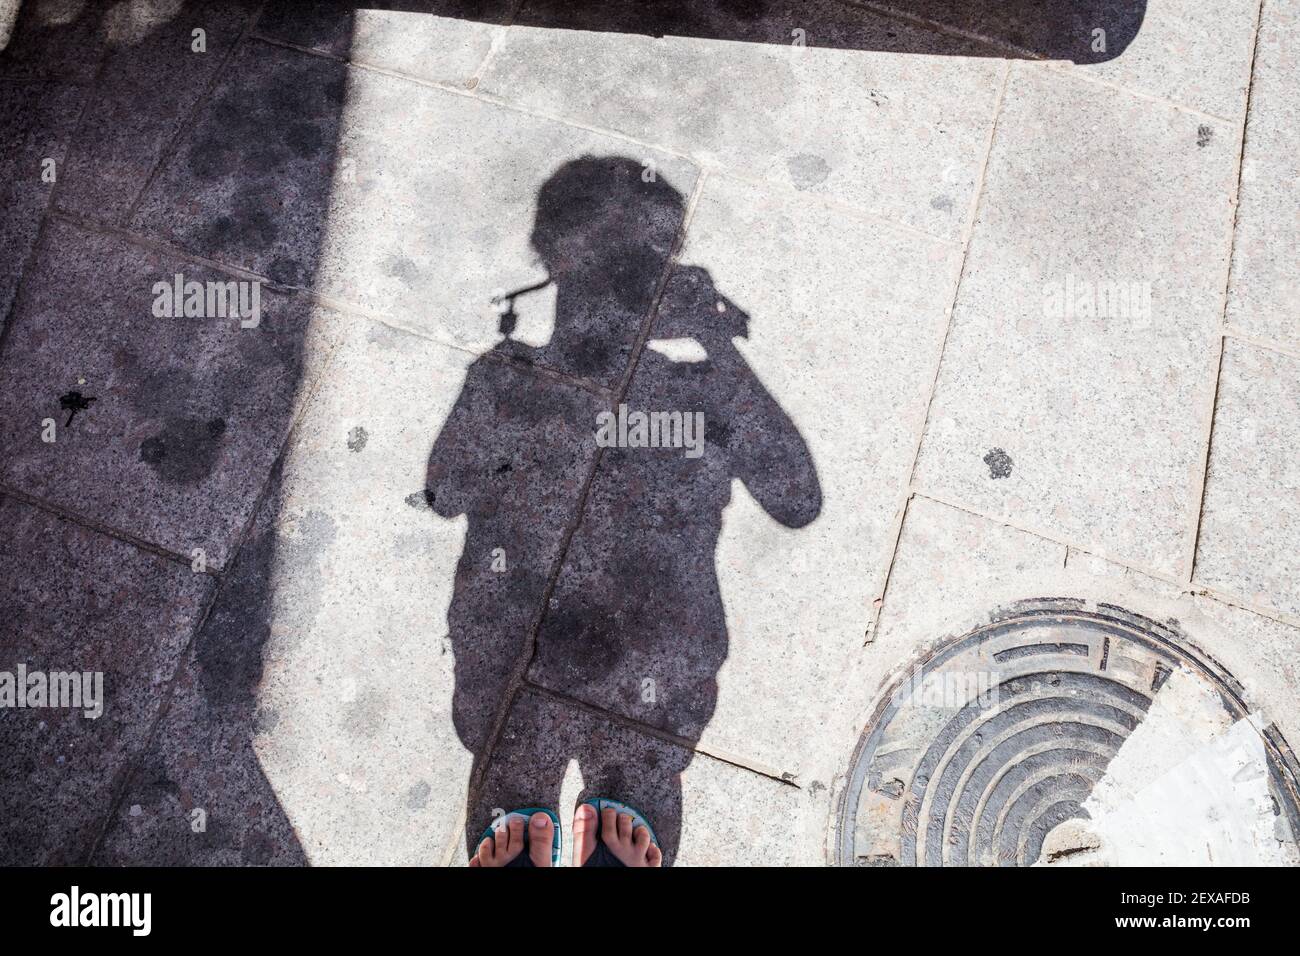 Un enfant prenant une image de son ombre sur le sol Banque D'Images